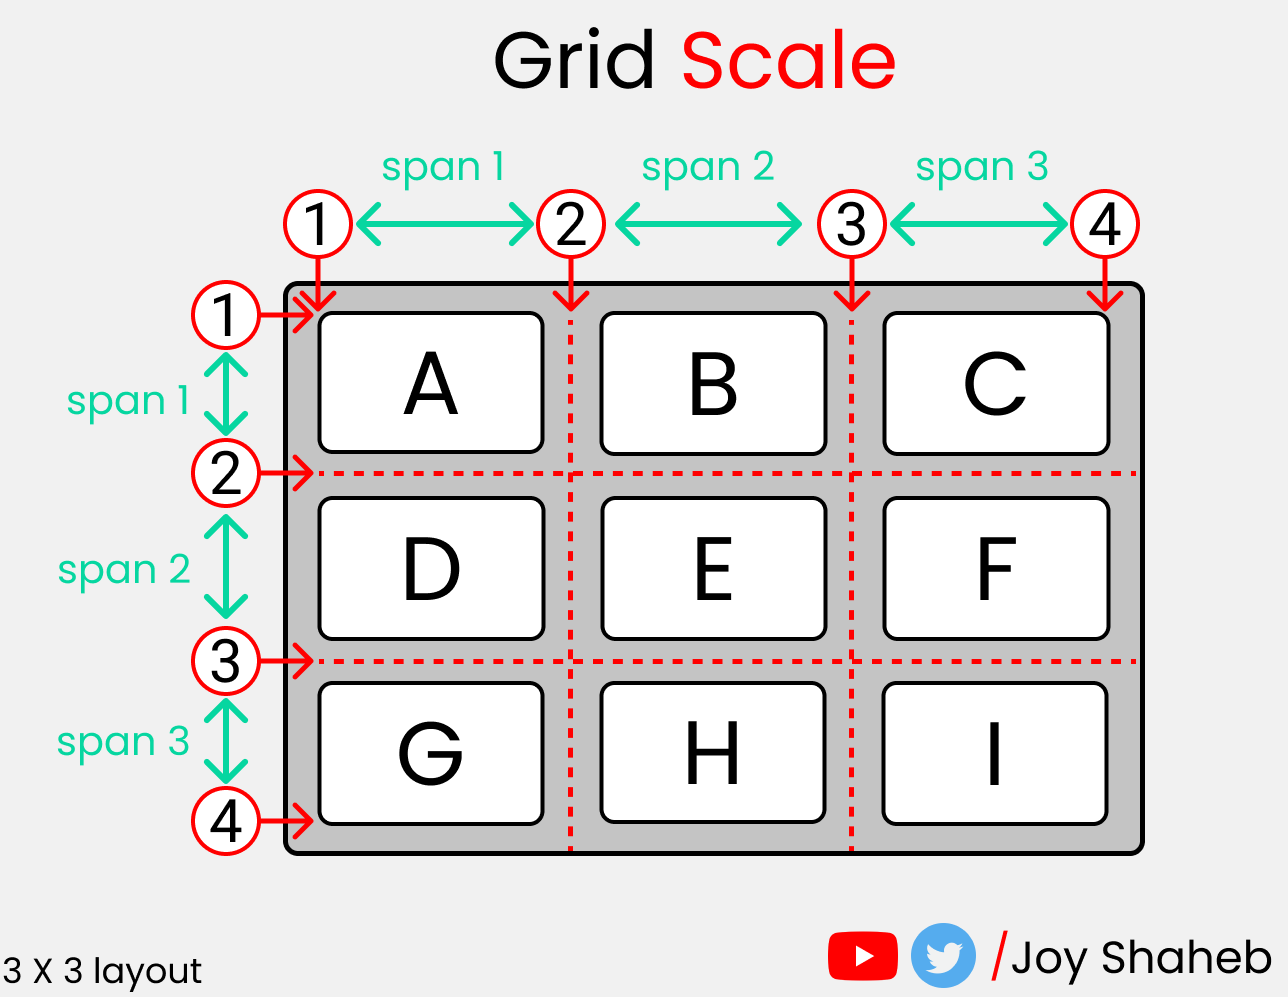 Полный самоучитель по CSS Grid со шпаргалкой 22